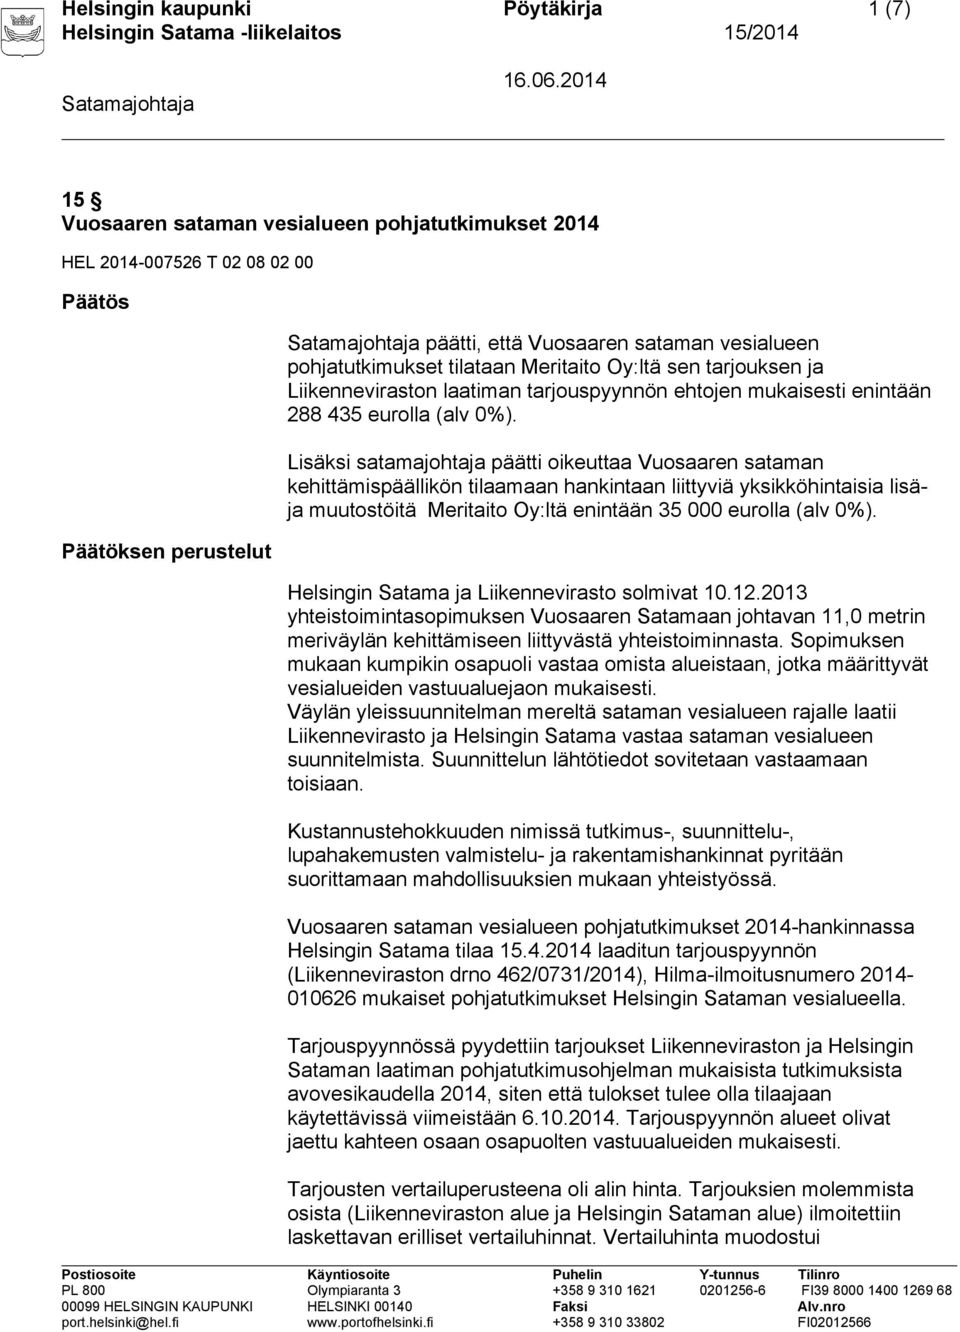 Lisäksi satamajohtaja päätti oikeuttaa Vuosaaren sataman kehittämispäällikön tilaamaan hankintaan liittyviä yksikköhintaisia lisäja muutostöitä Meritaito Oy:ltä enintään 35 000 eurolla (alv 0%).